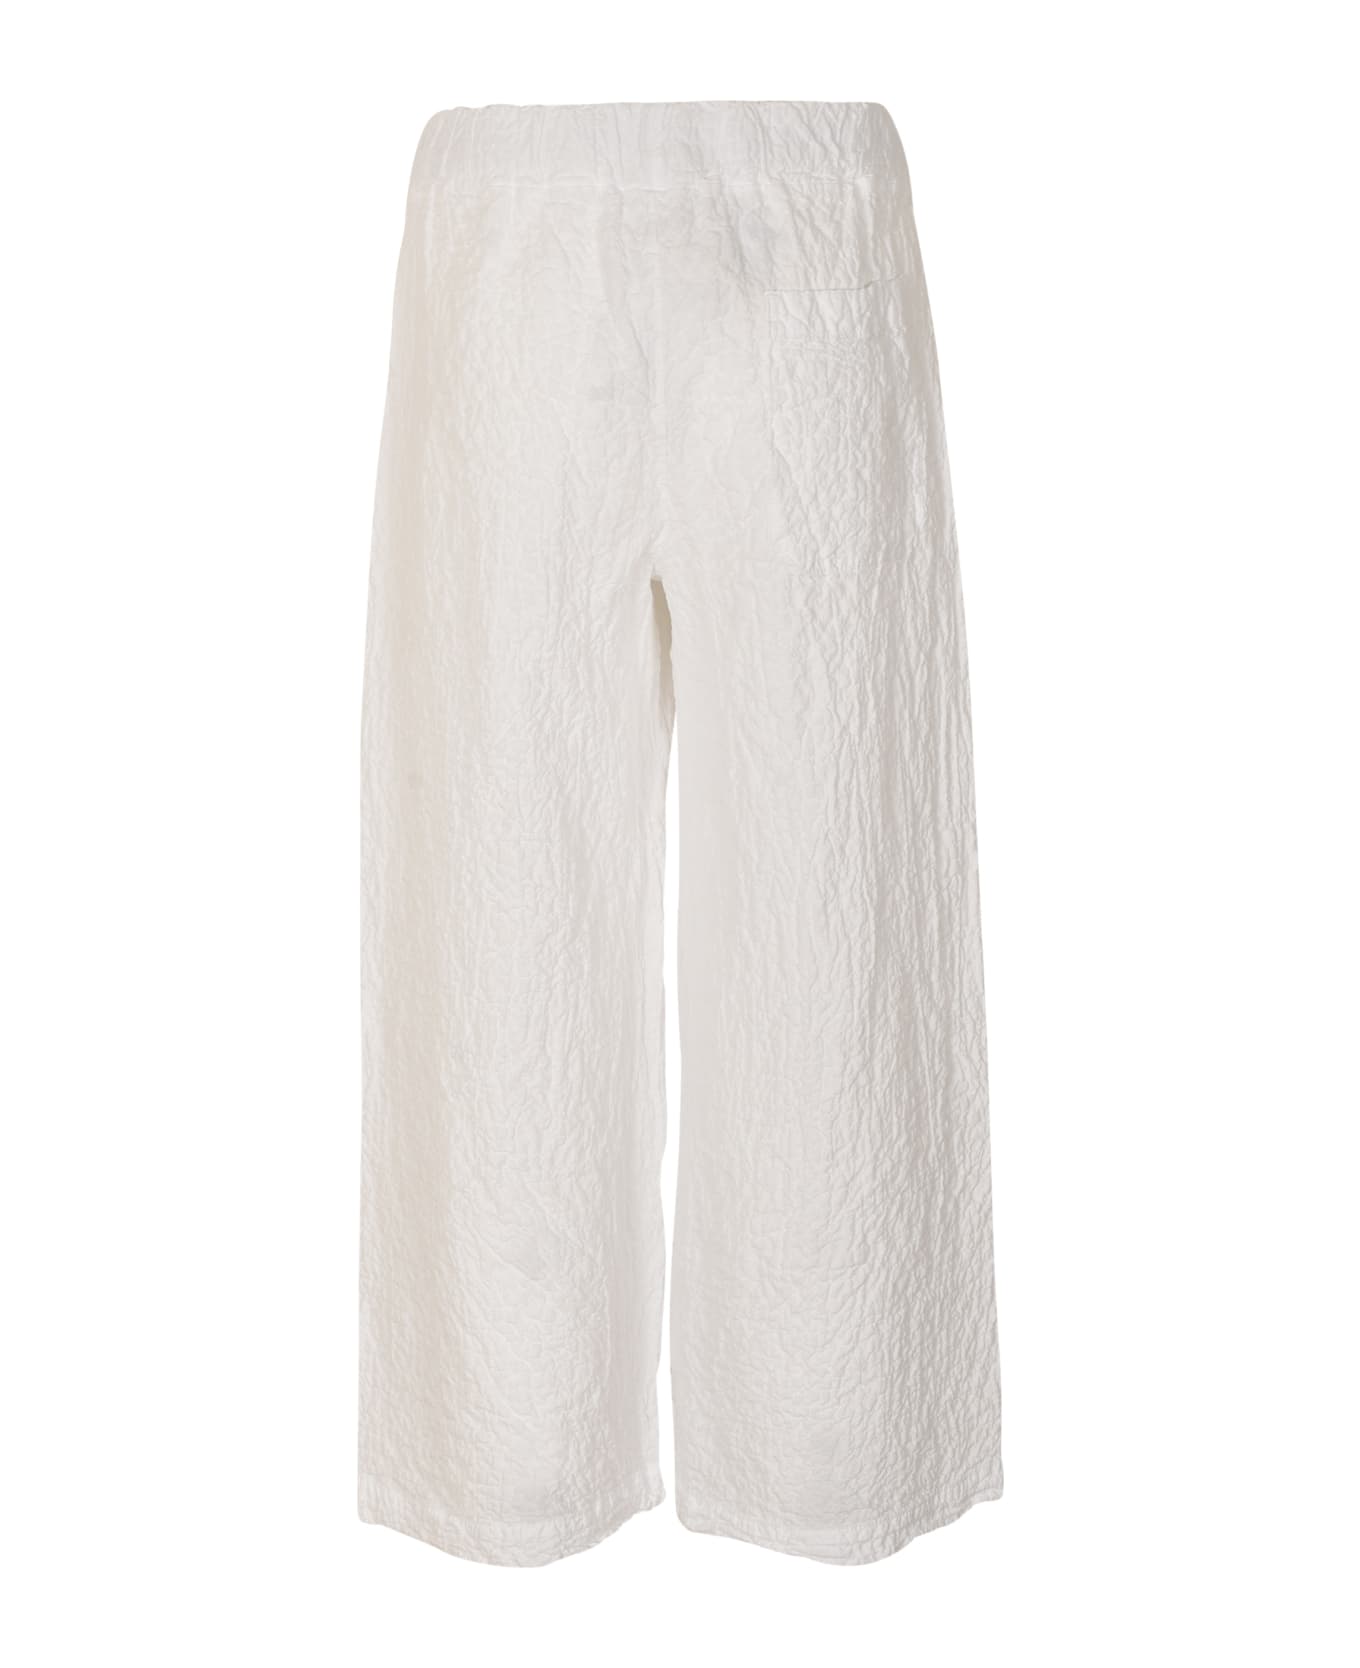 Labo.Art Storto Soul Trousers - White